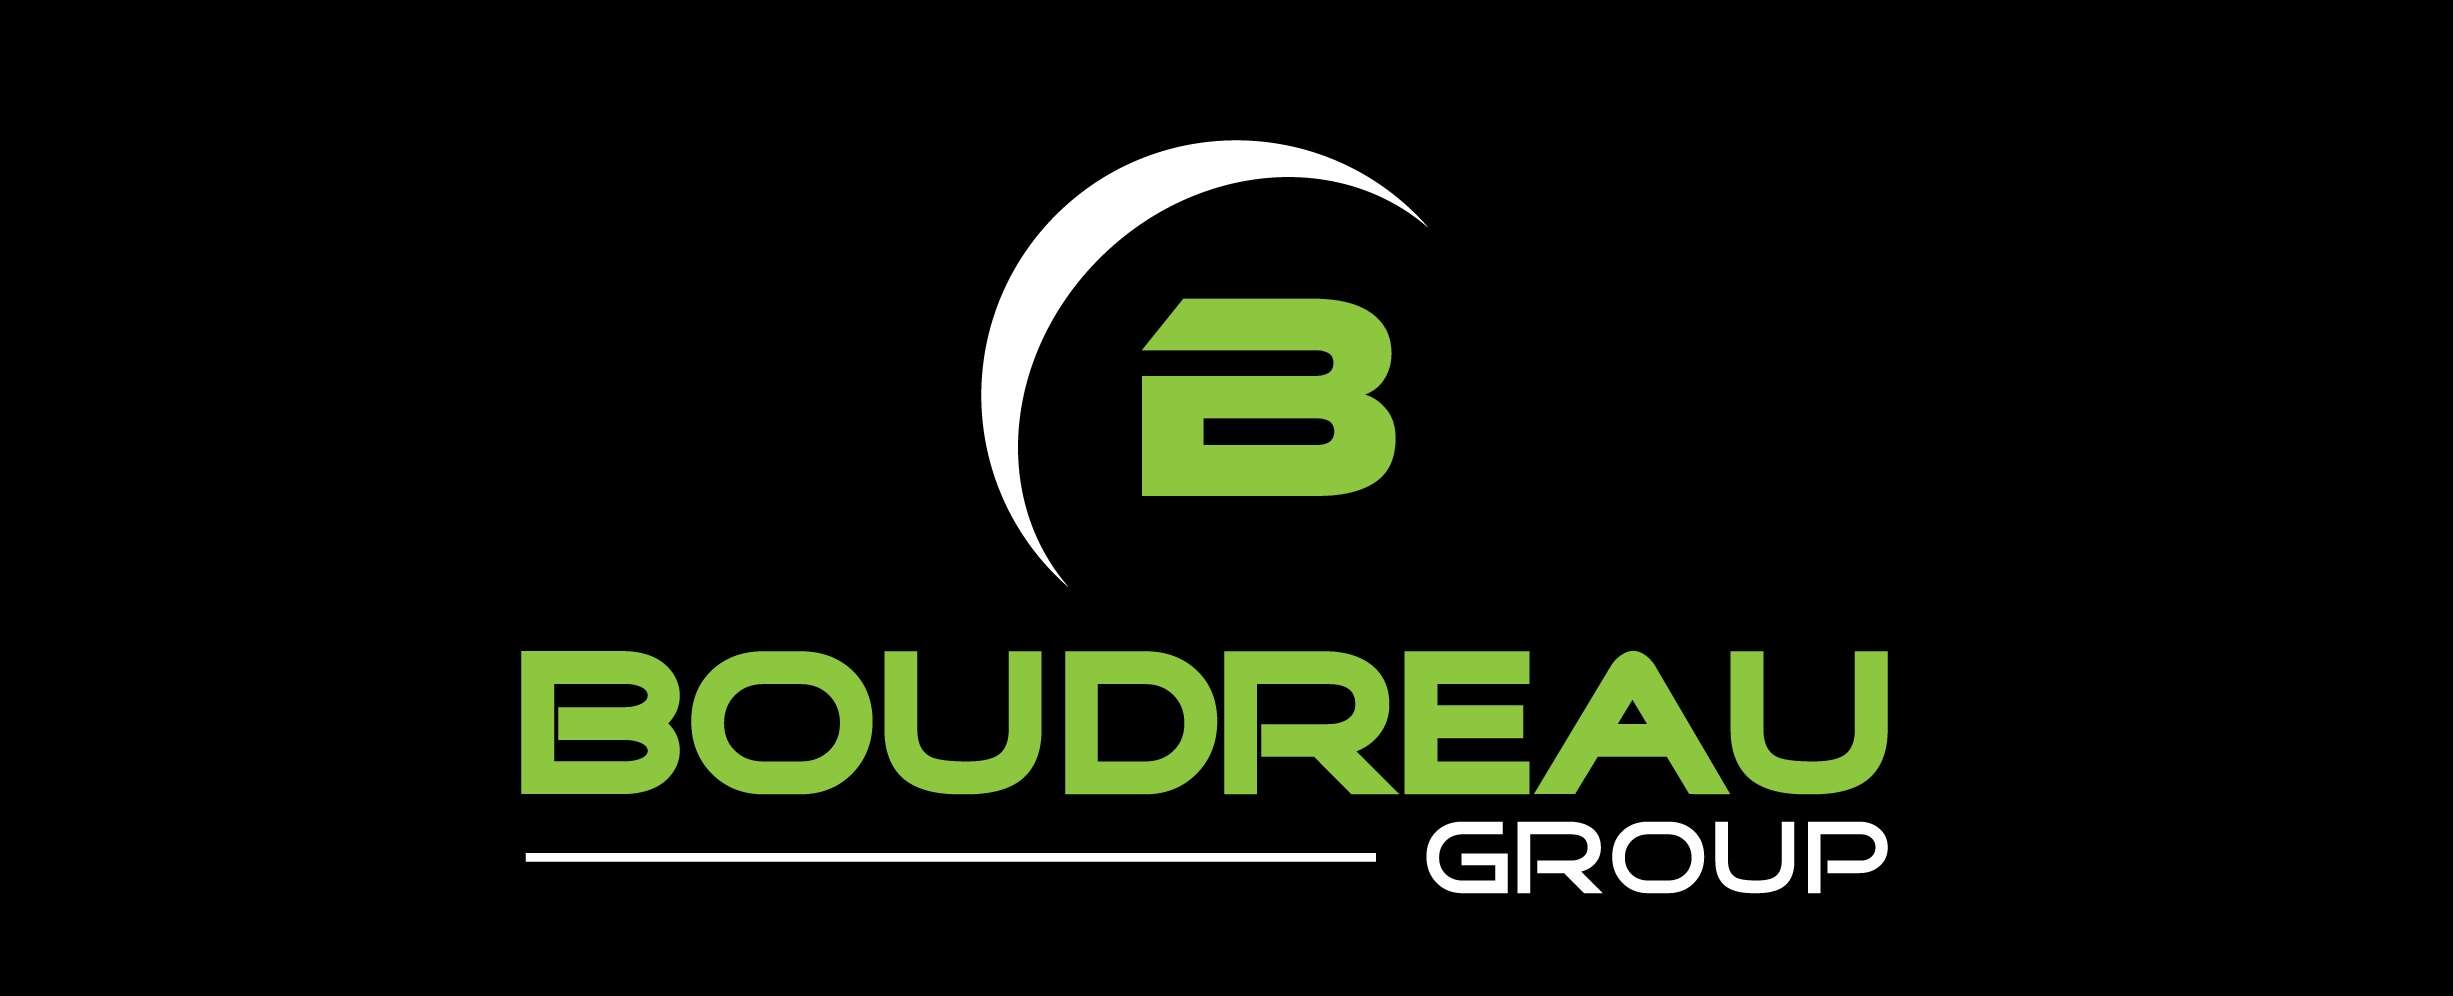 Boudreau Group